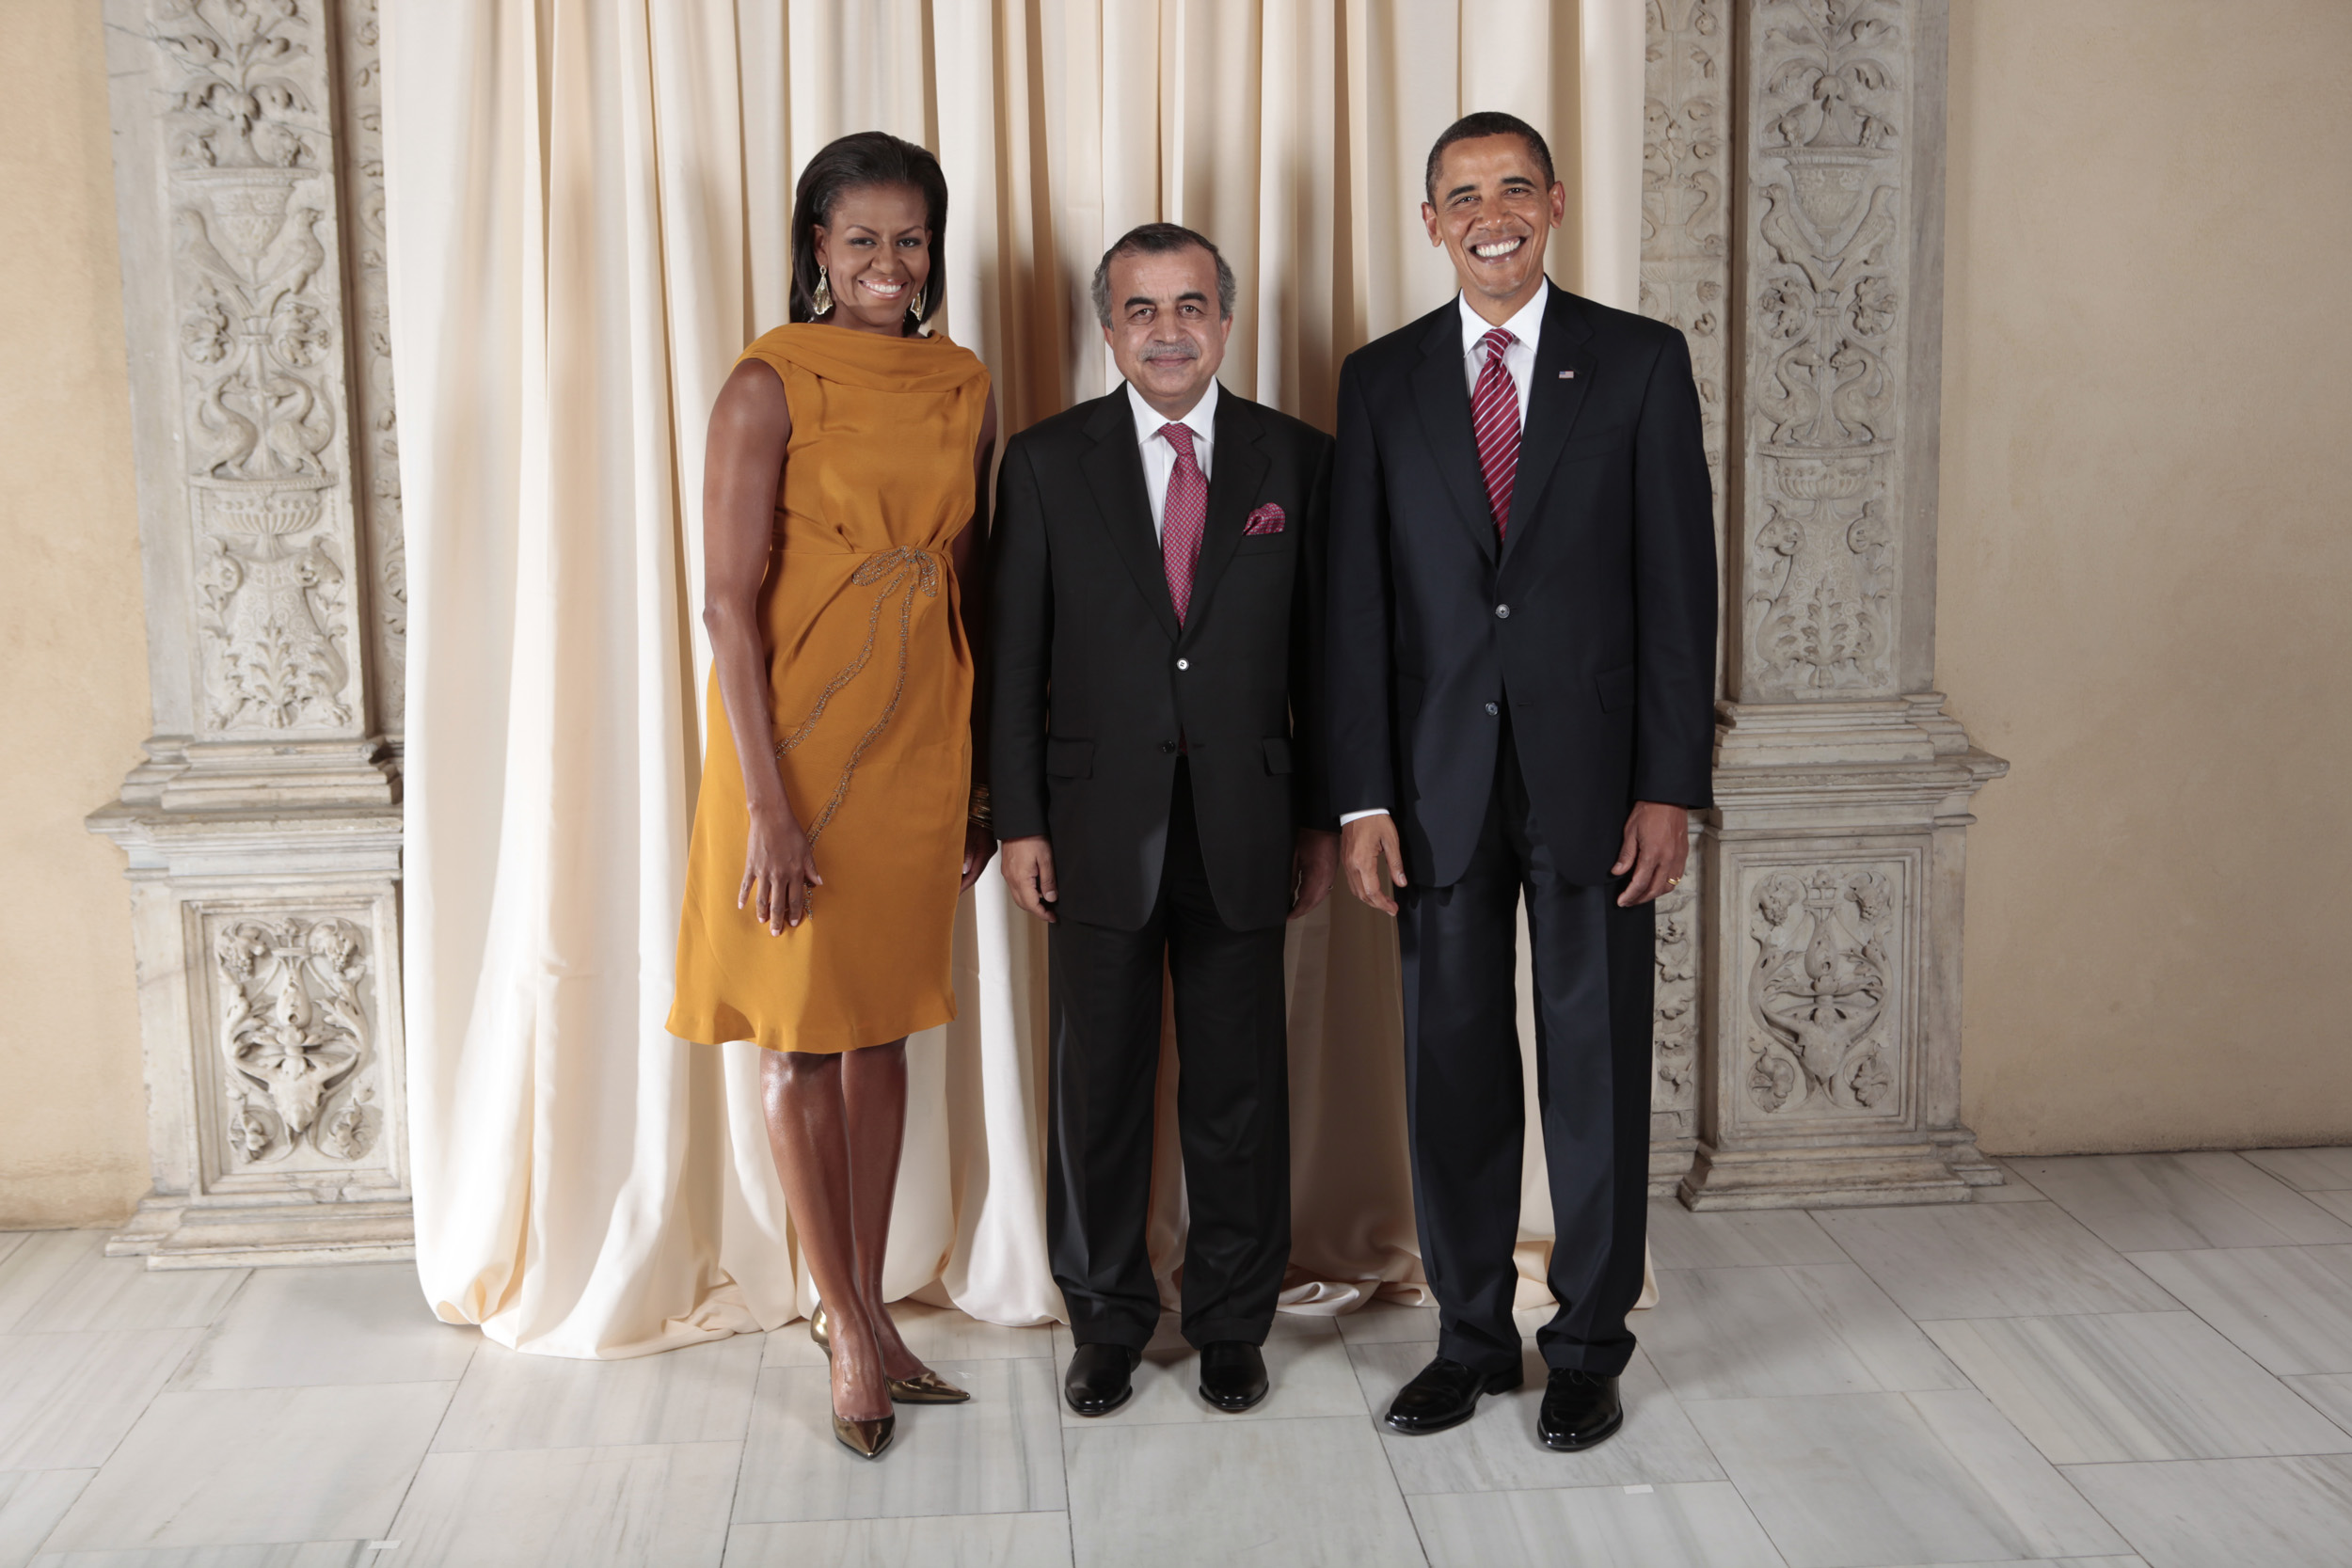 Zahir Tanin with Obamas